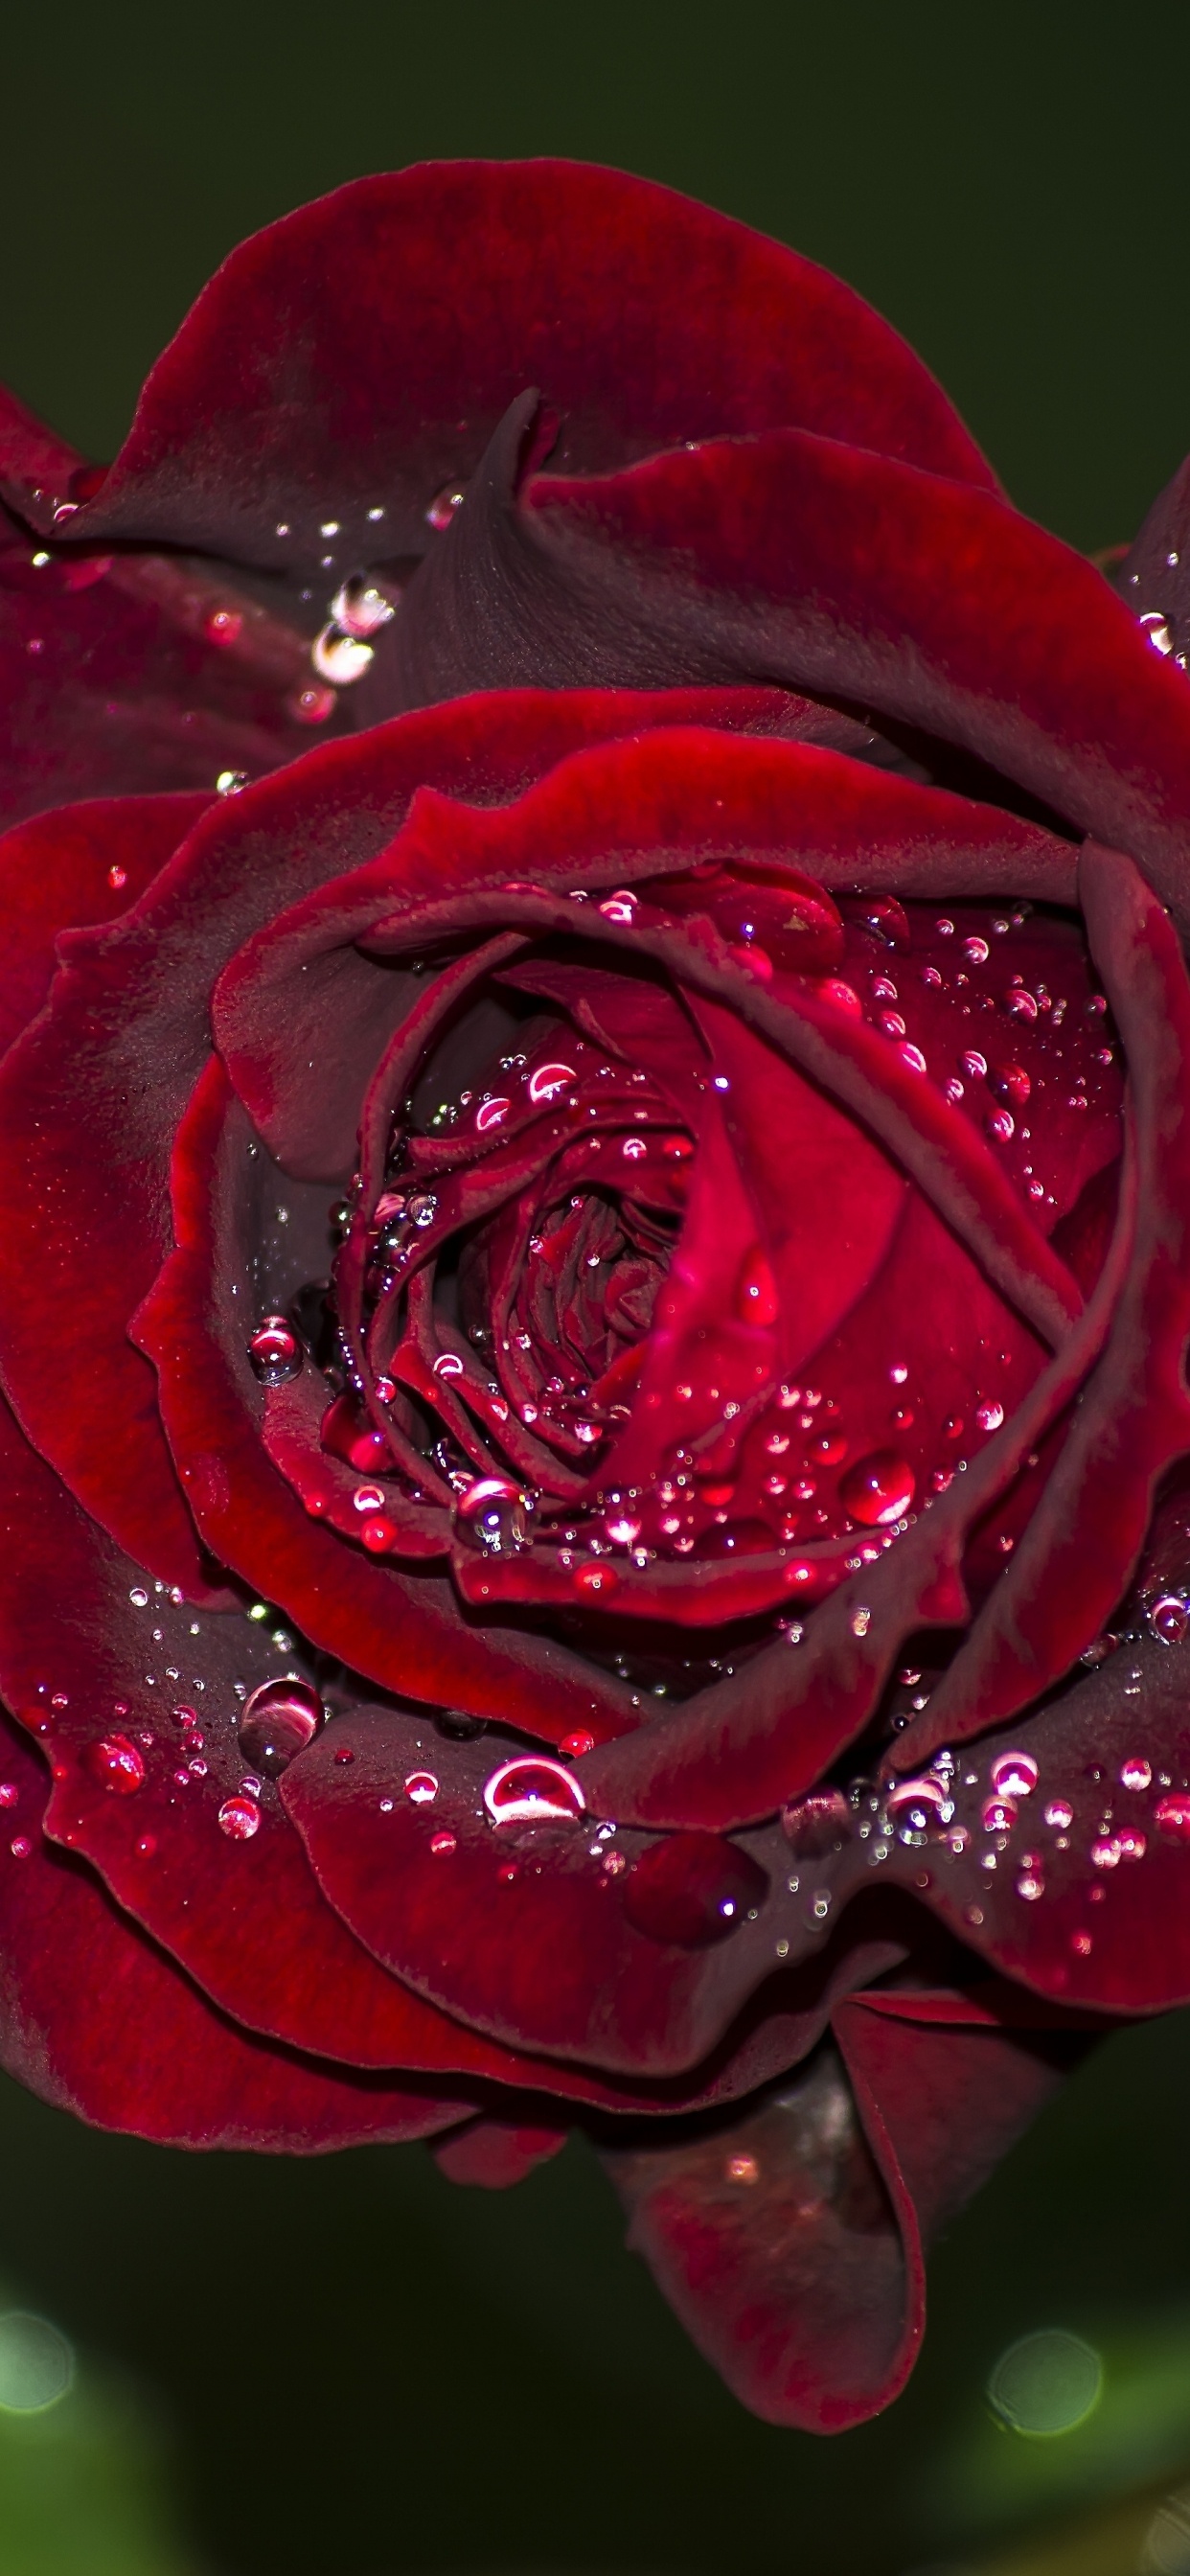 Rose Rouge en Fleurs Avec Des Gouttes de Rosée. Wallpaper in 1242x2688 Resolution